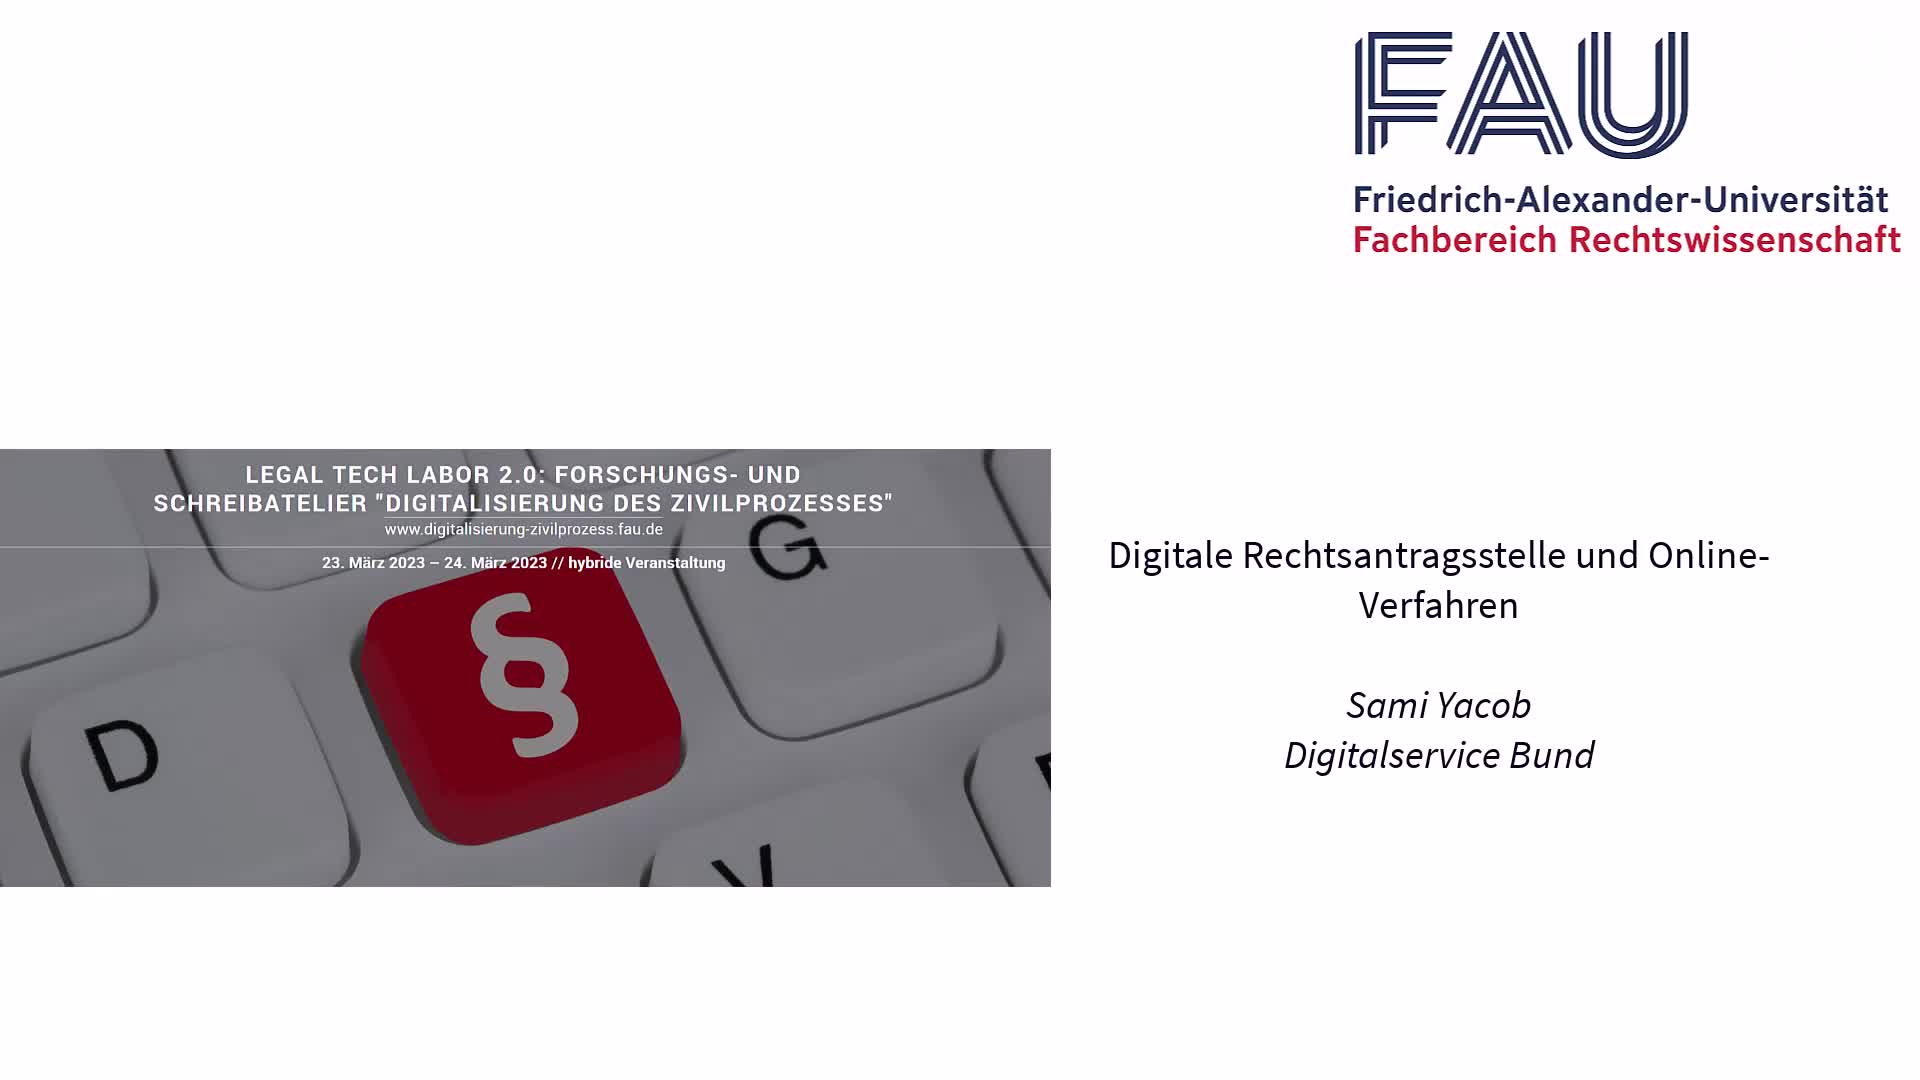 Digitalisierung des Zivilprozesses: Digitale Rechtsantragsstelle und Online-Verfahren (Sami Yacob)) preview image